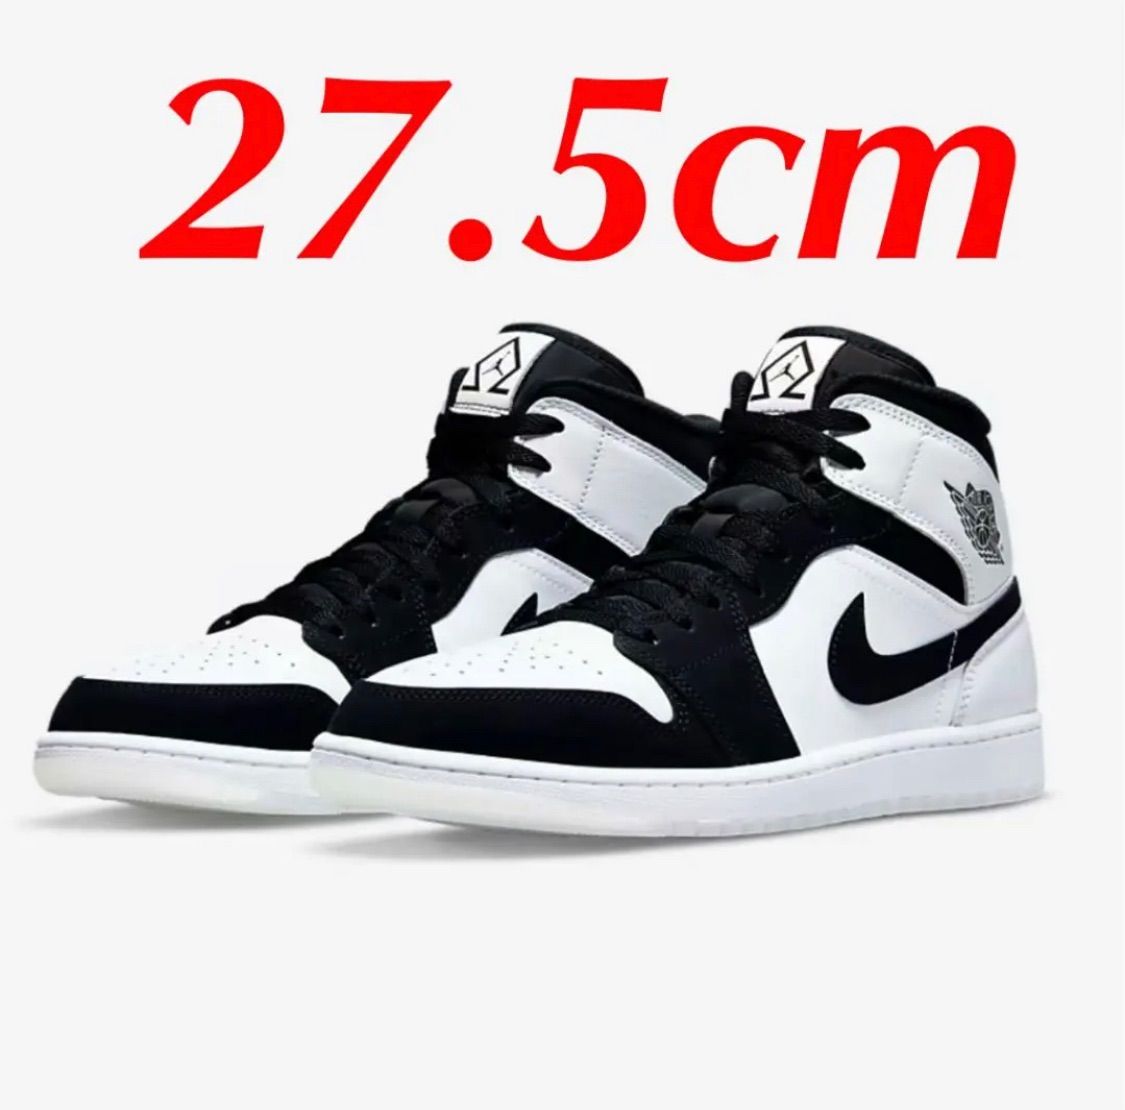 Nike Air Jordan 1 Mid Omega 27.5